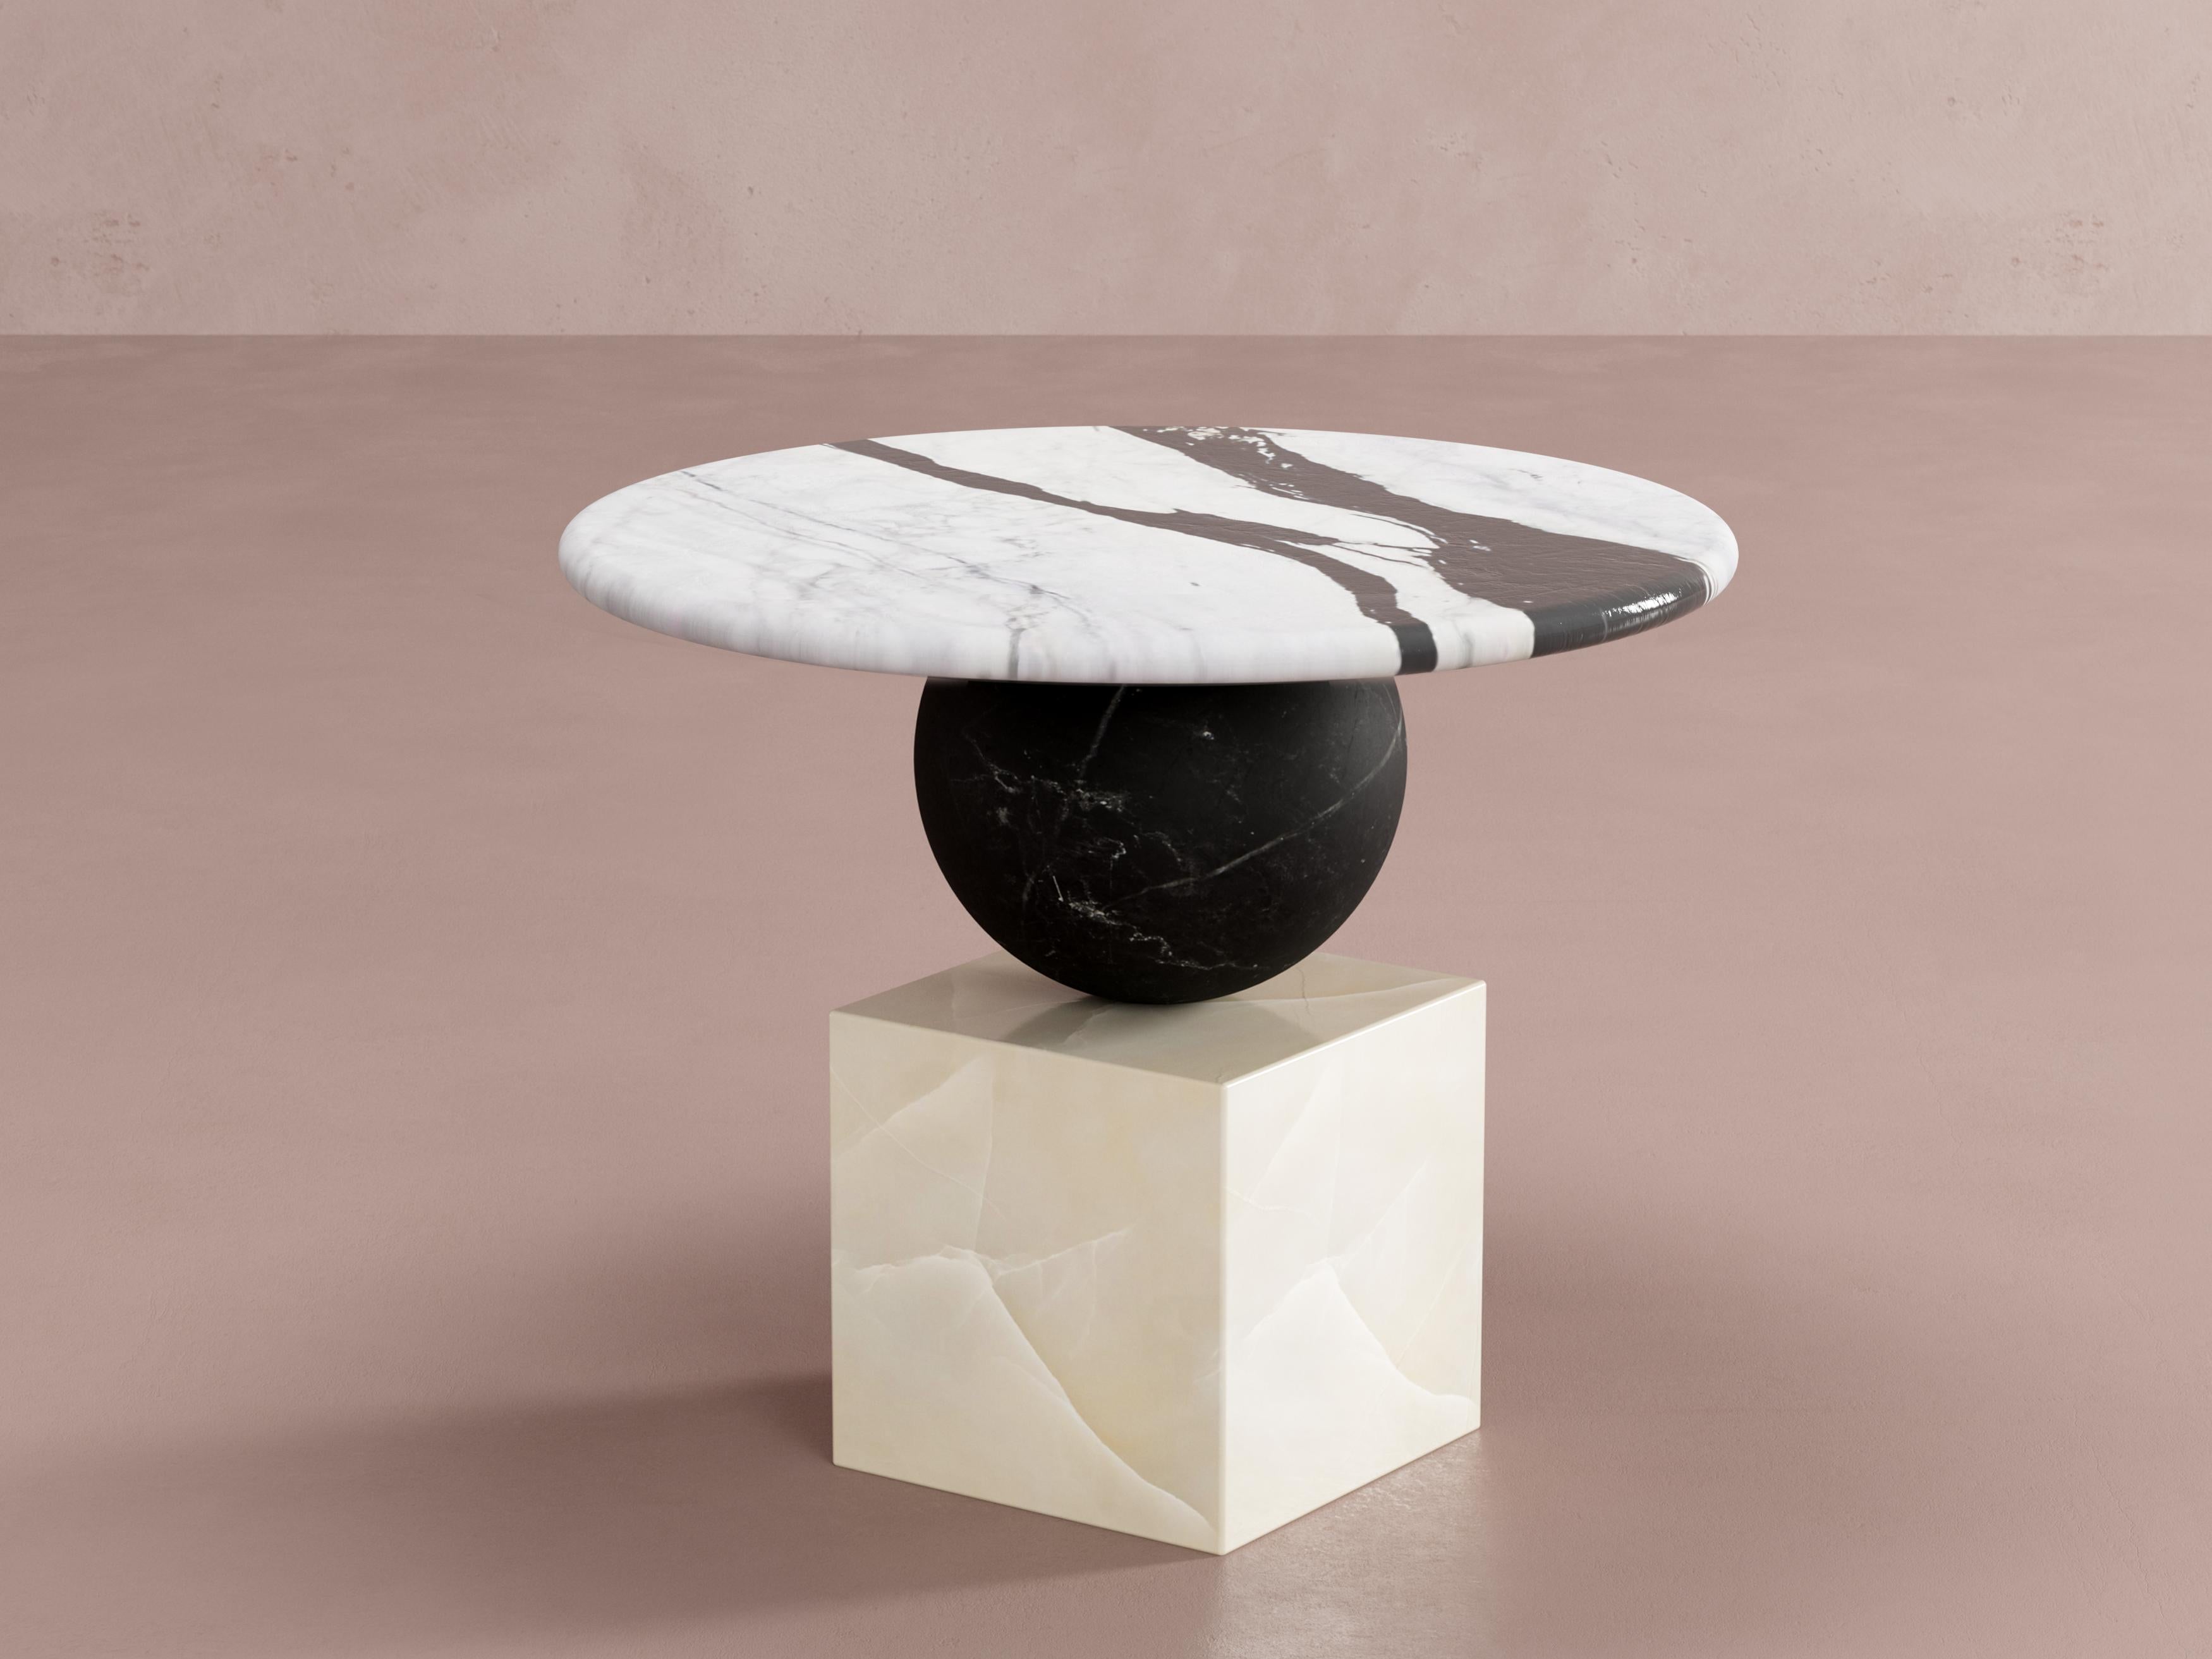 Table d'appoint Balance 1 par Pilar Zeta
MATERIAL : Marbre, onyx et métal.
Dimensions : L 50 x P 50 x H 56 cm.
Poids : 100 kg.

Table d'appoint en marbre et onyx, noir et blanc. Marbre, onyx et structure métallique.

L'artiste d'origine argentine